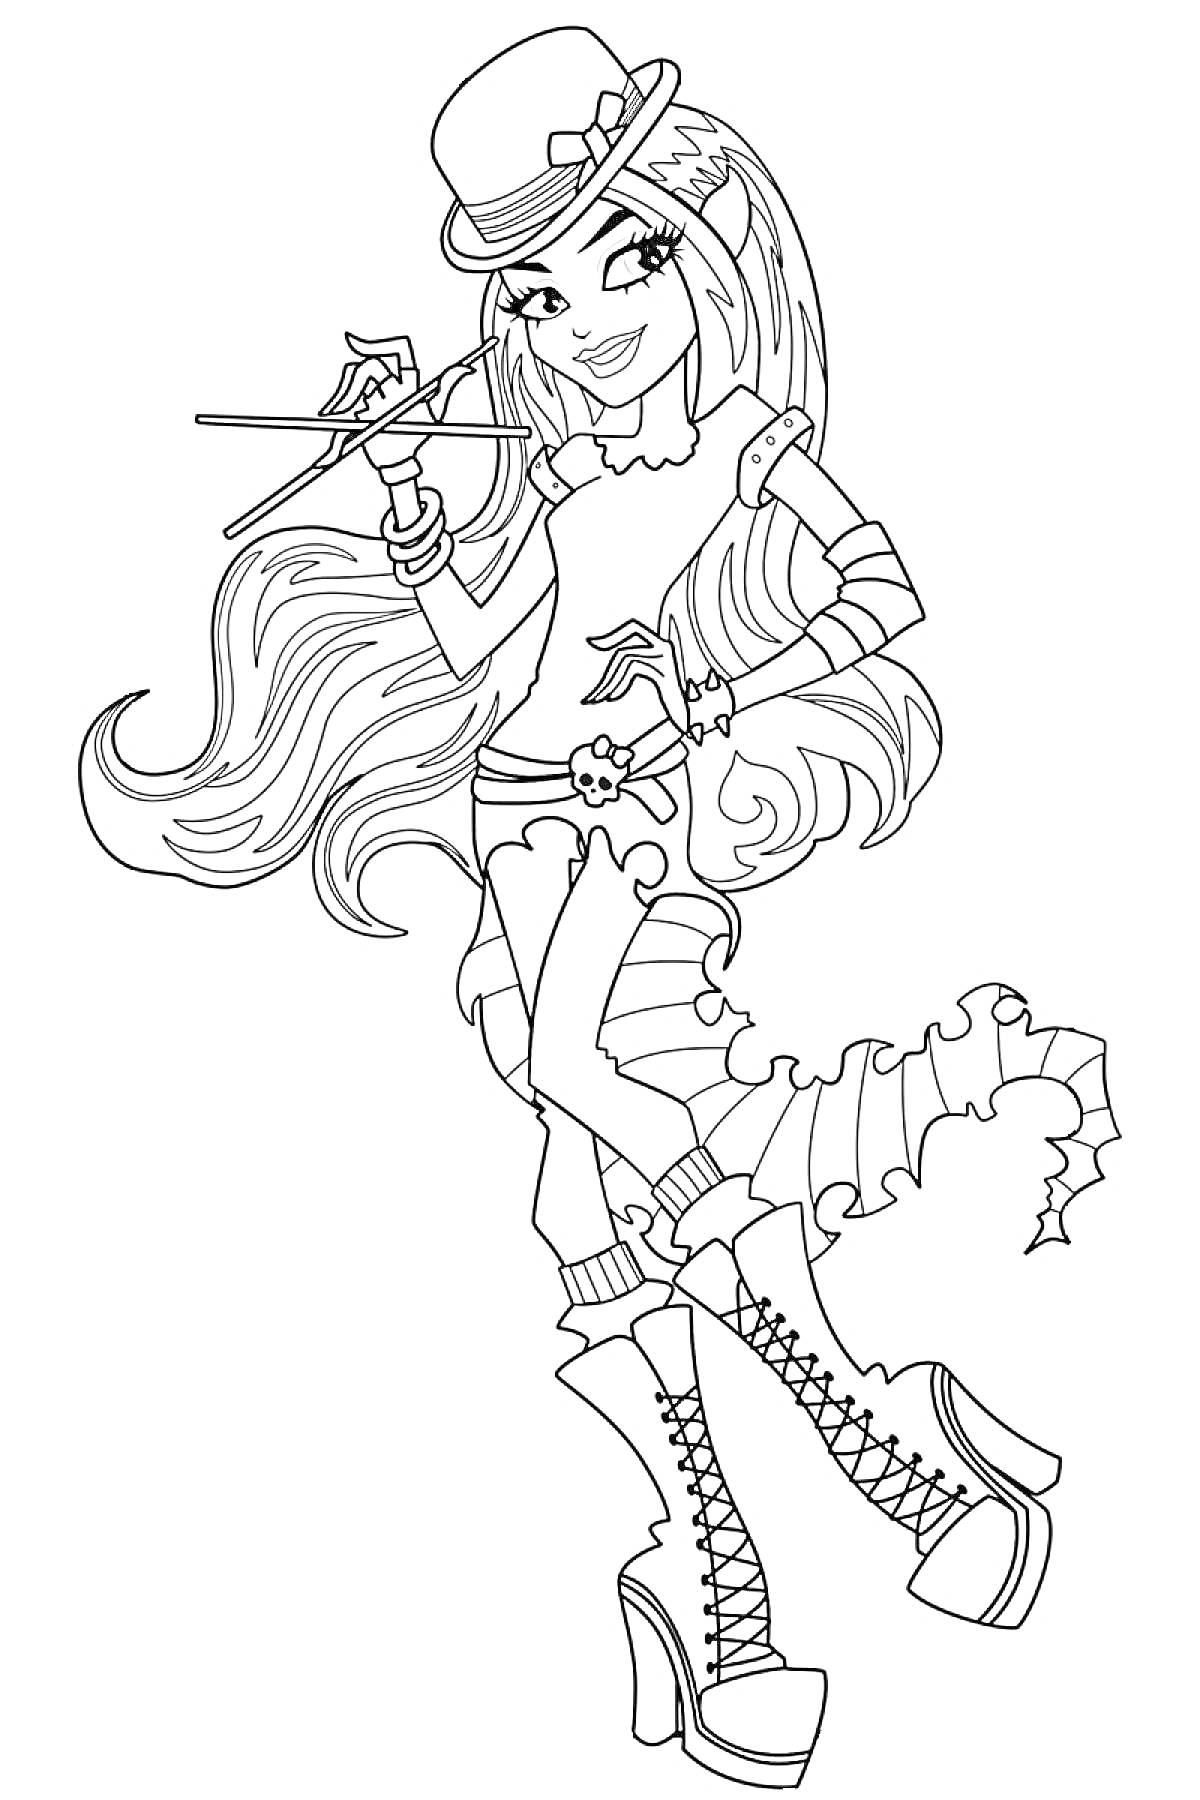 Девушка из Монстр Хай в шляпе с длинными волосами, в сапогах на каблуке и с волшебной палочкой в руке